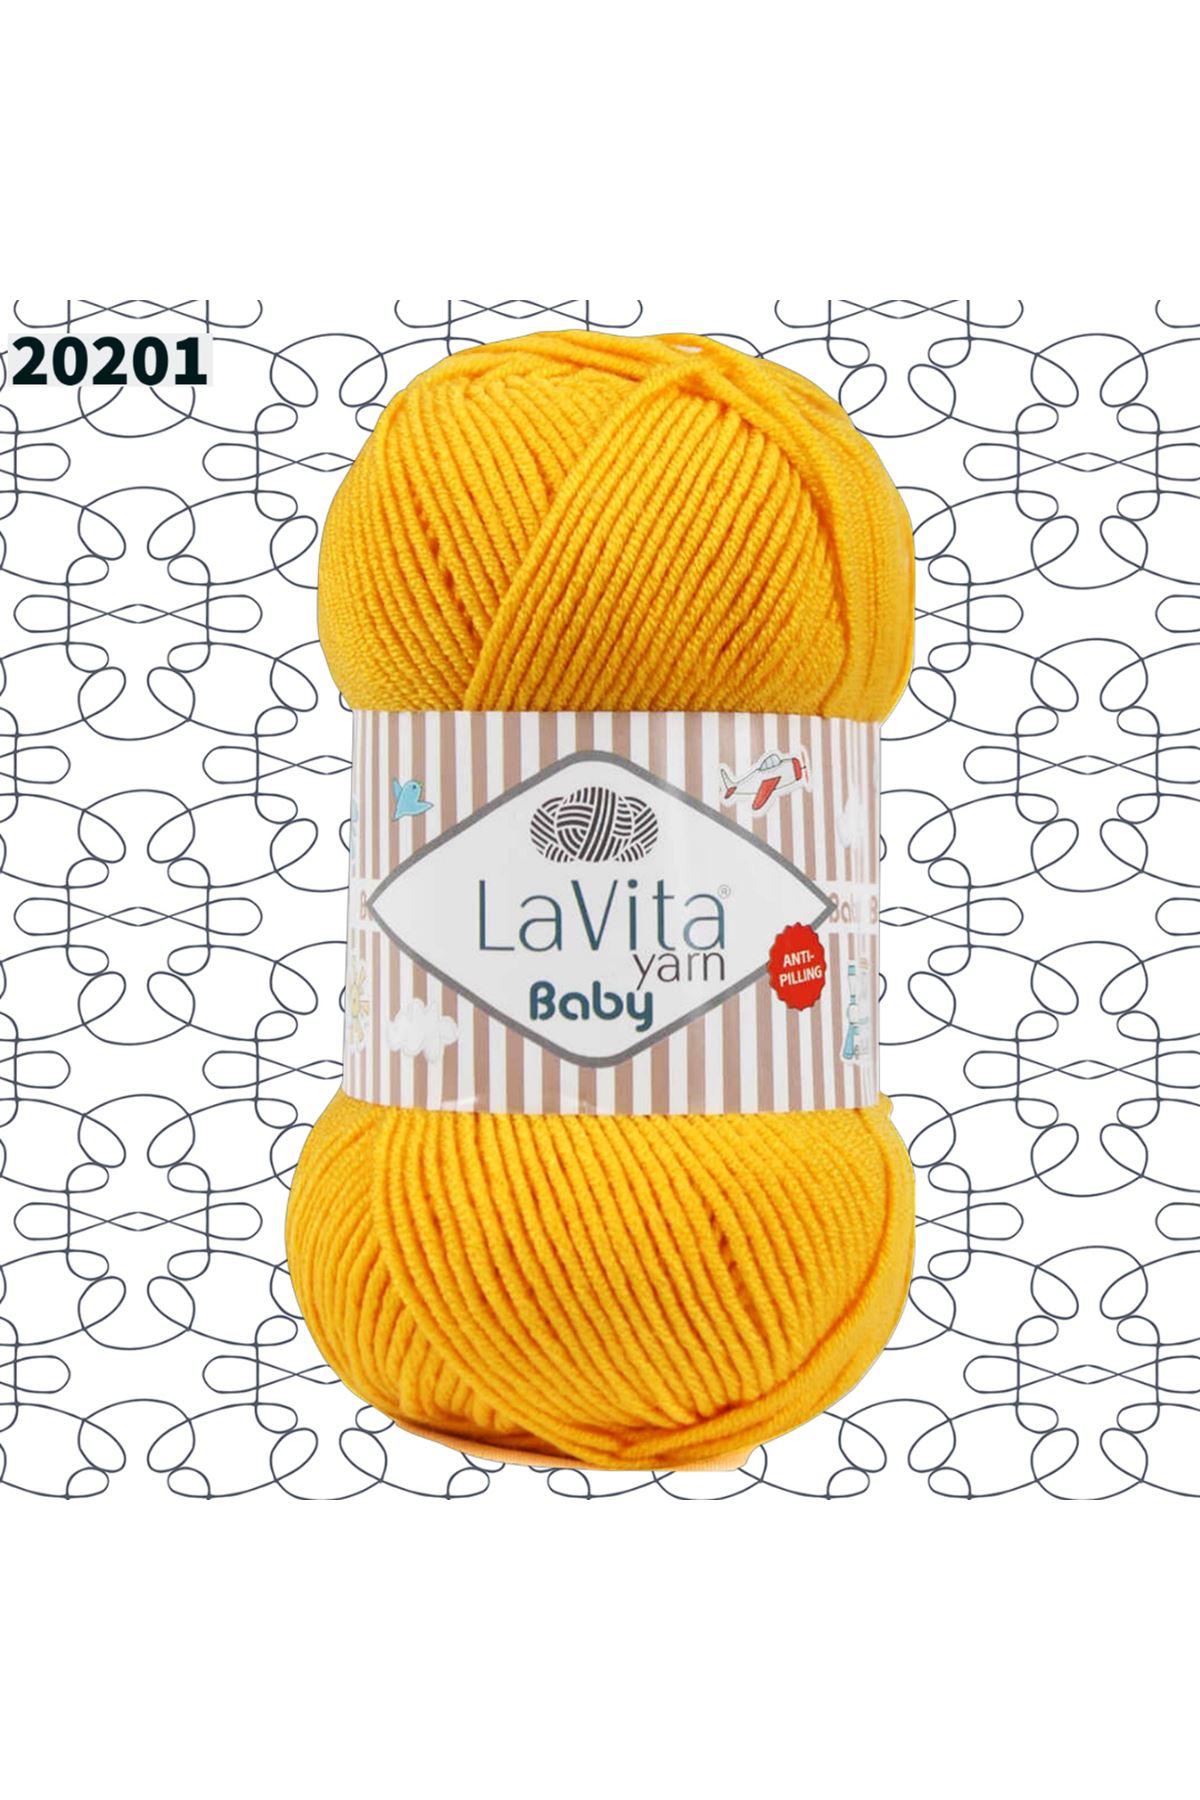 Lavita Baby - 20201 Sarı